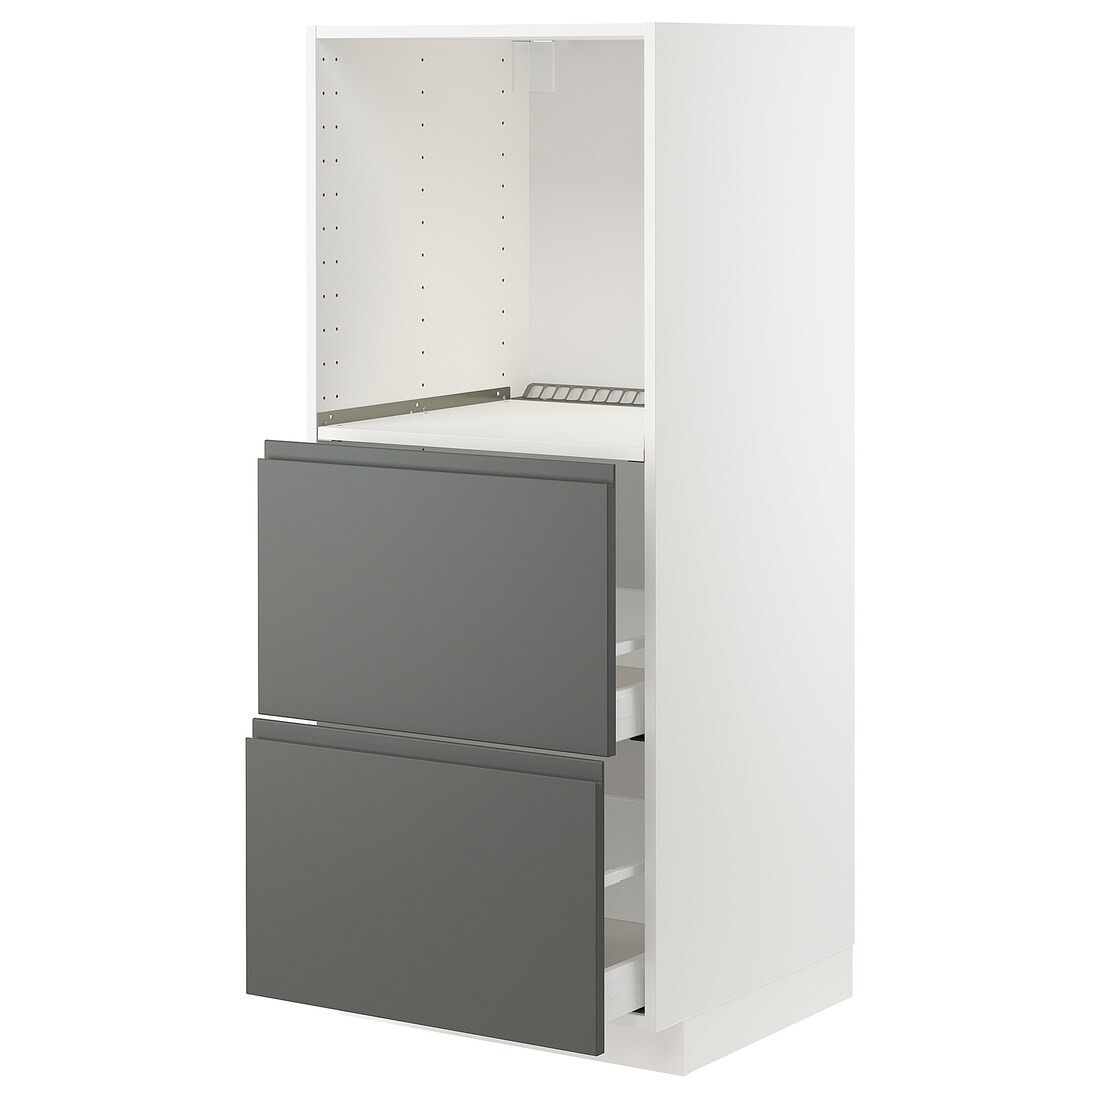 METOD МЕТОД / MAXIMERA МАКСИМЕРА Высокий шкаф с 2 ящиками для духовки, белый / Voxtorp темно-серый, 60x60x140 см